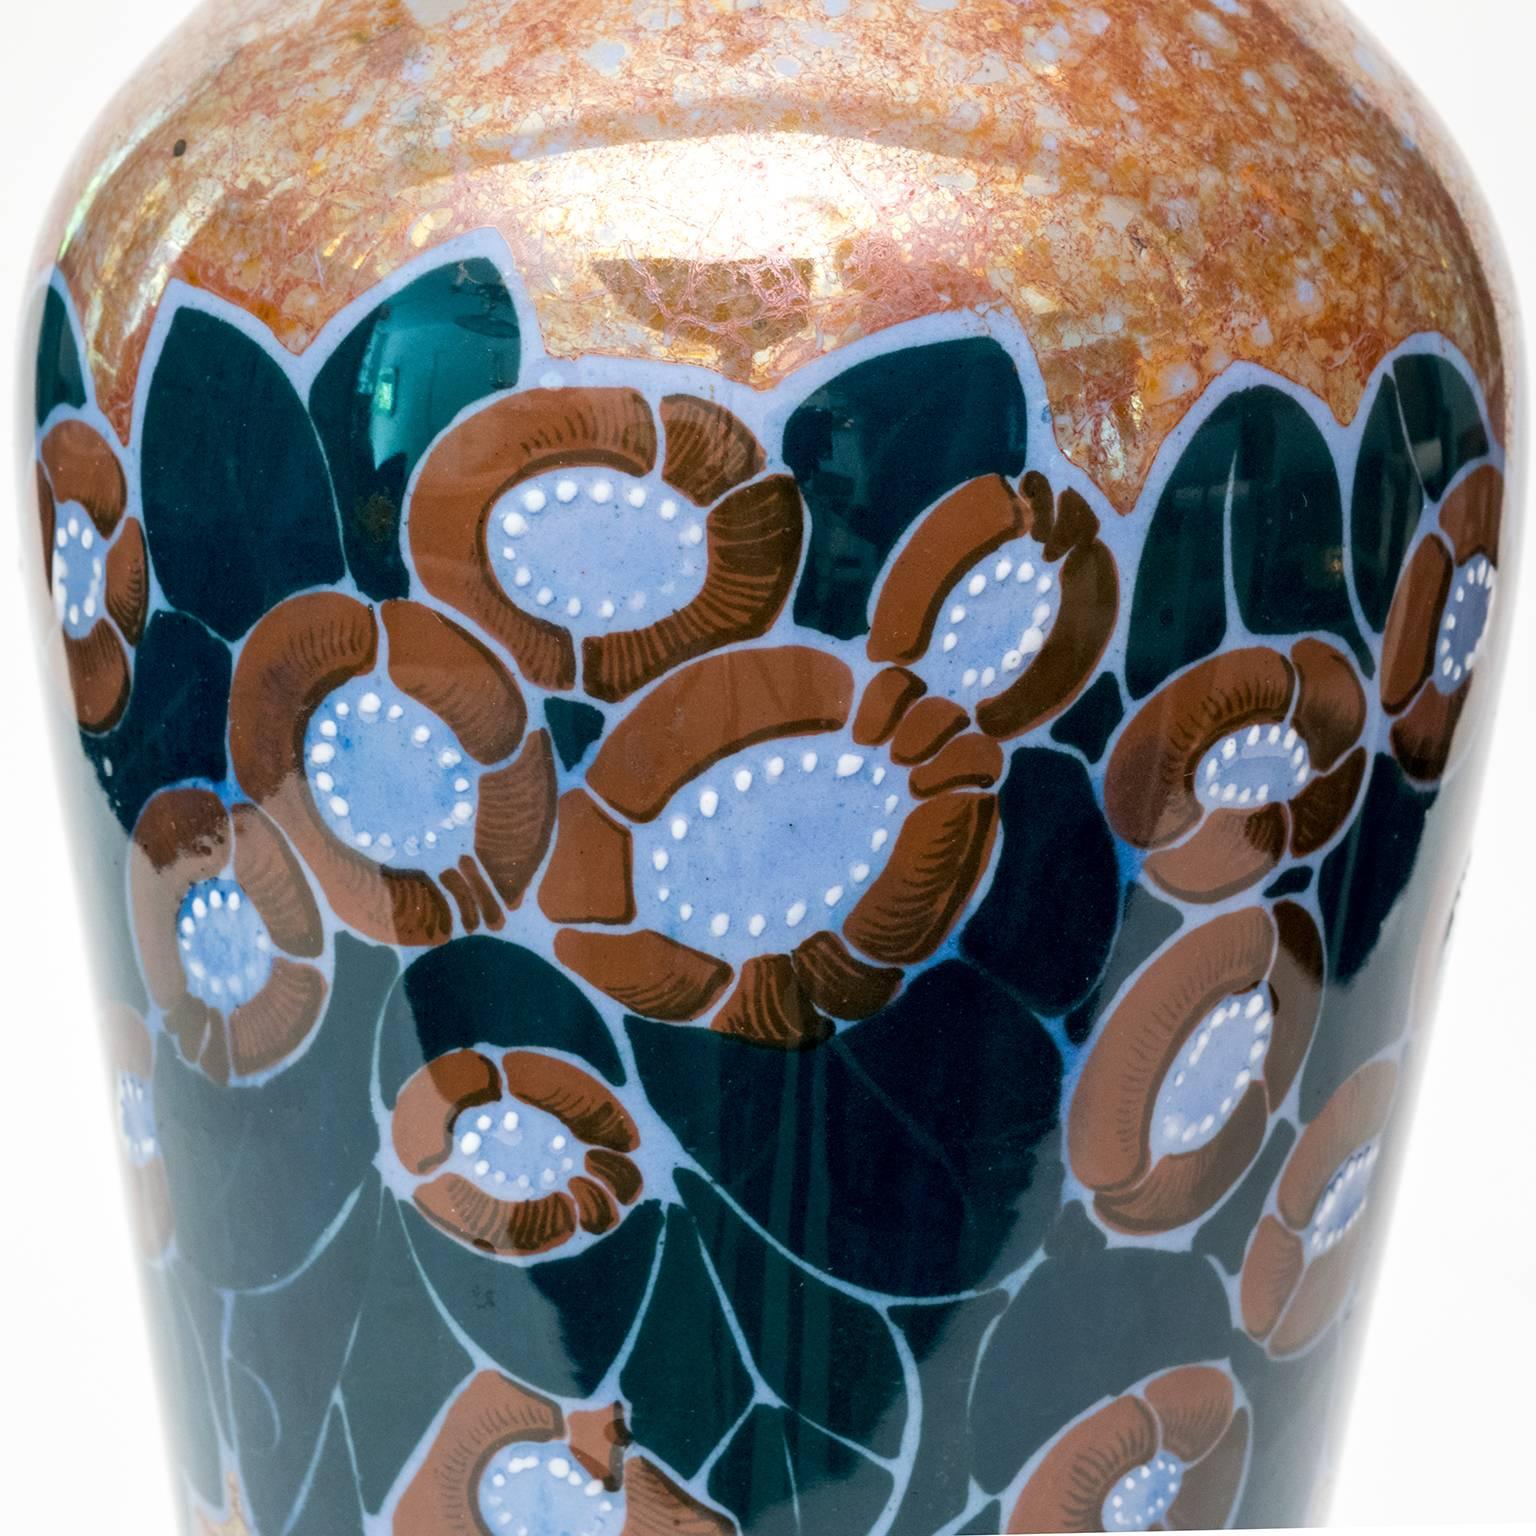 Skandinavische moderne glasierte Vase mit Glanzglasur von Arabia, Finnland (Skandinavische Moderne)